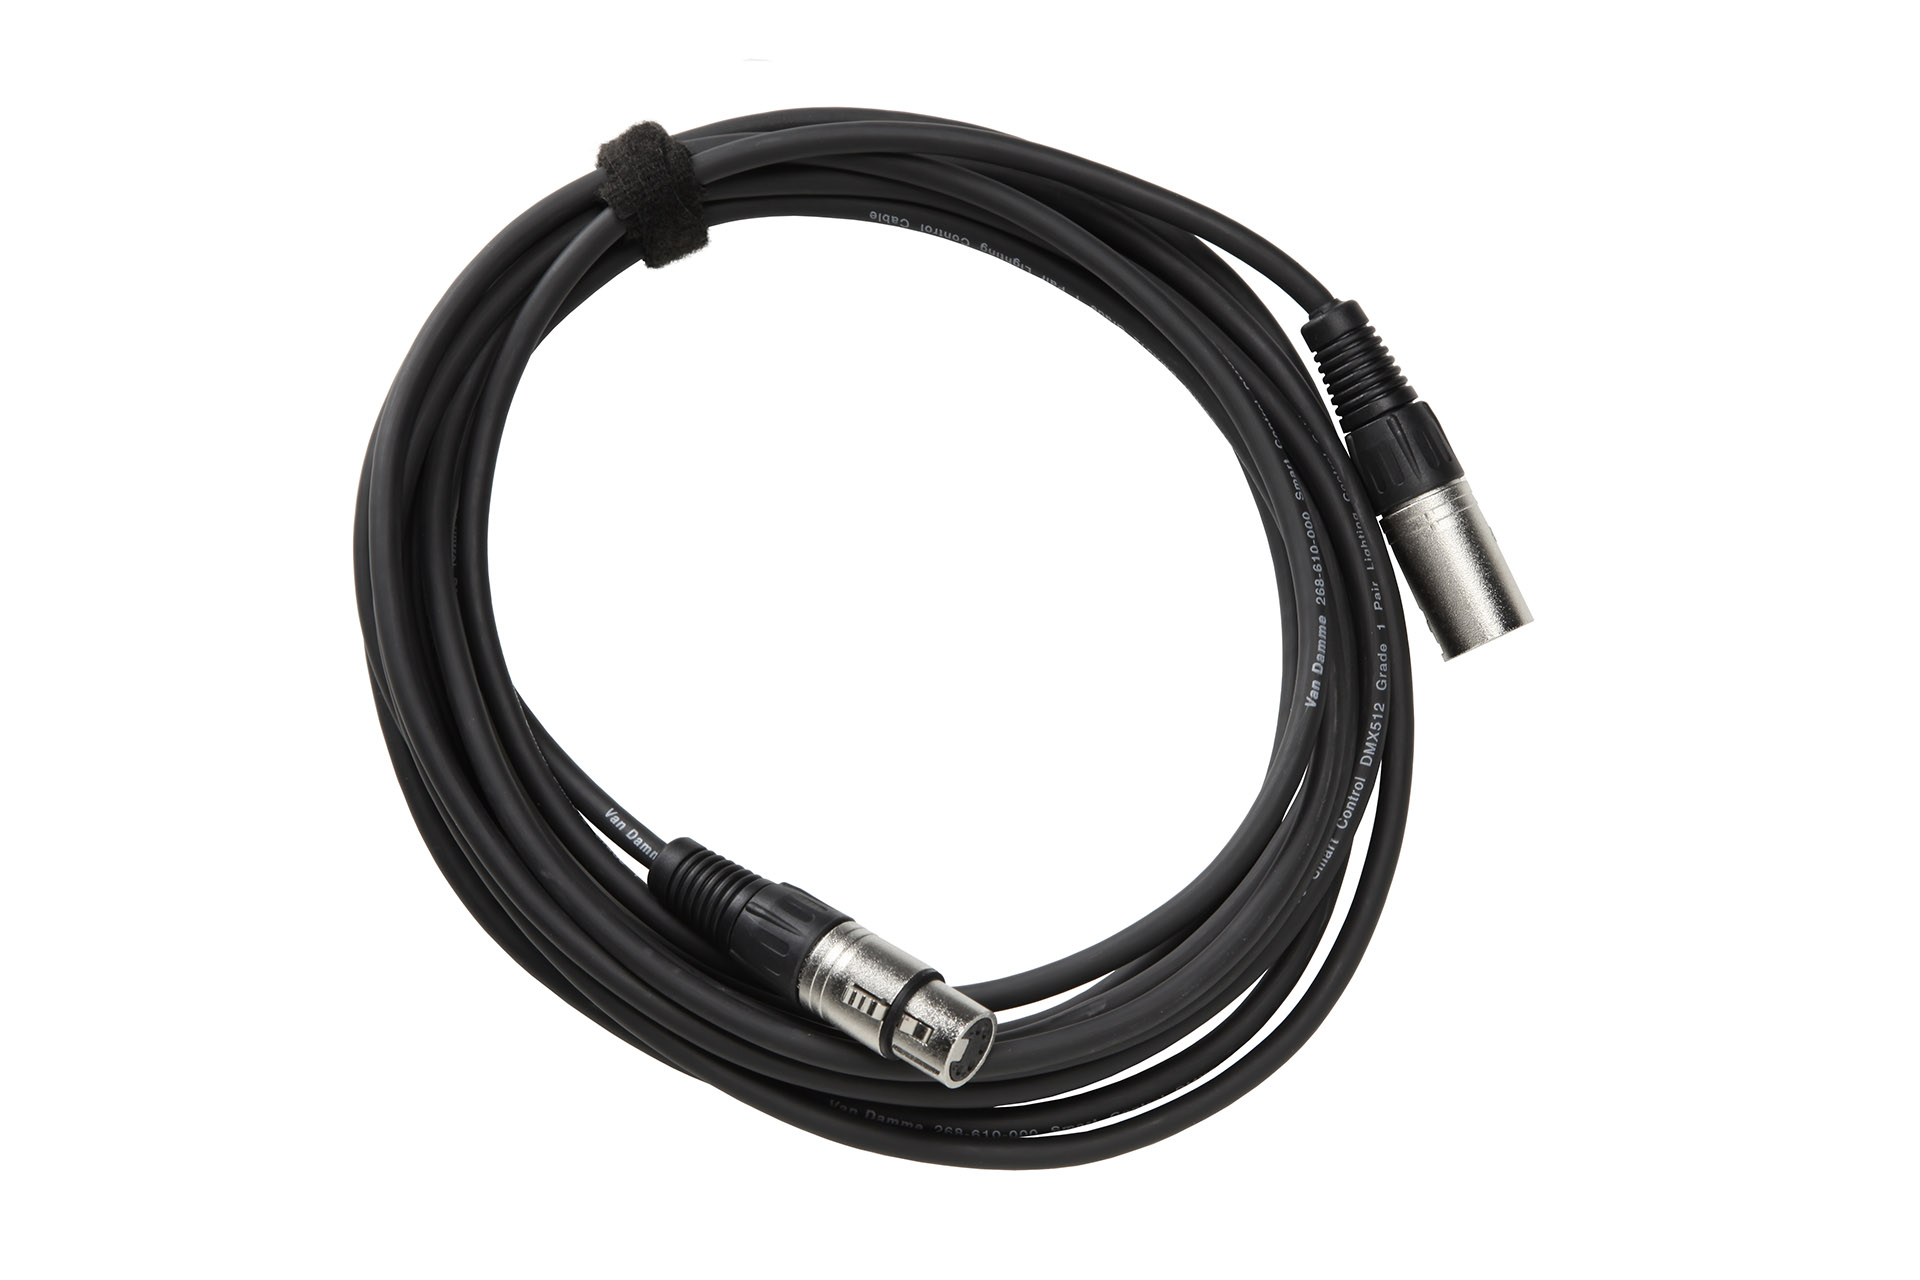 3m/ 10 feet DMX cable XLR-5 male/female connectors